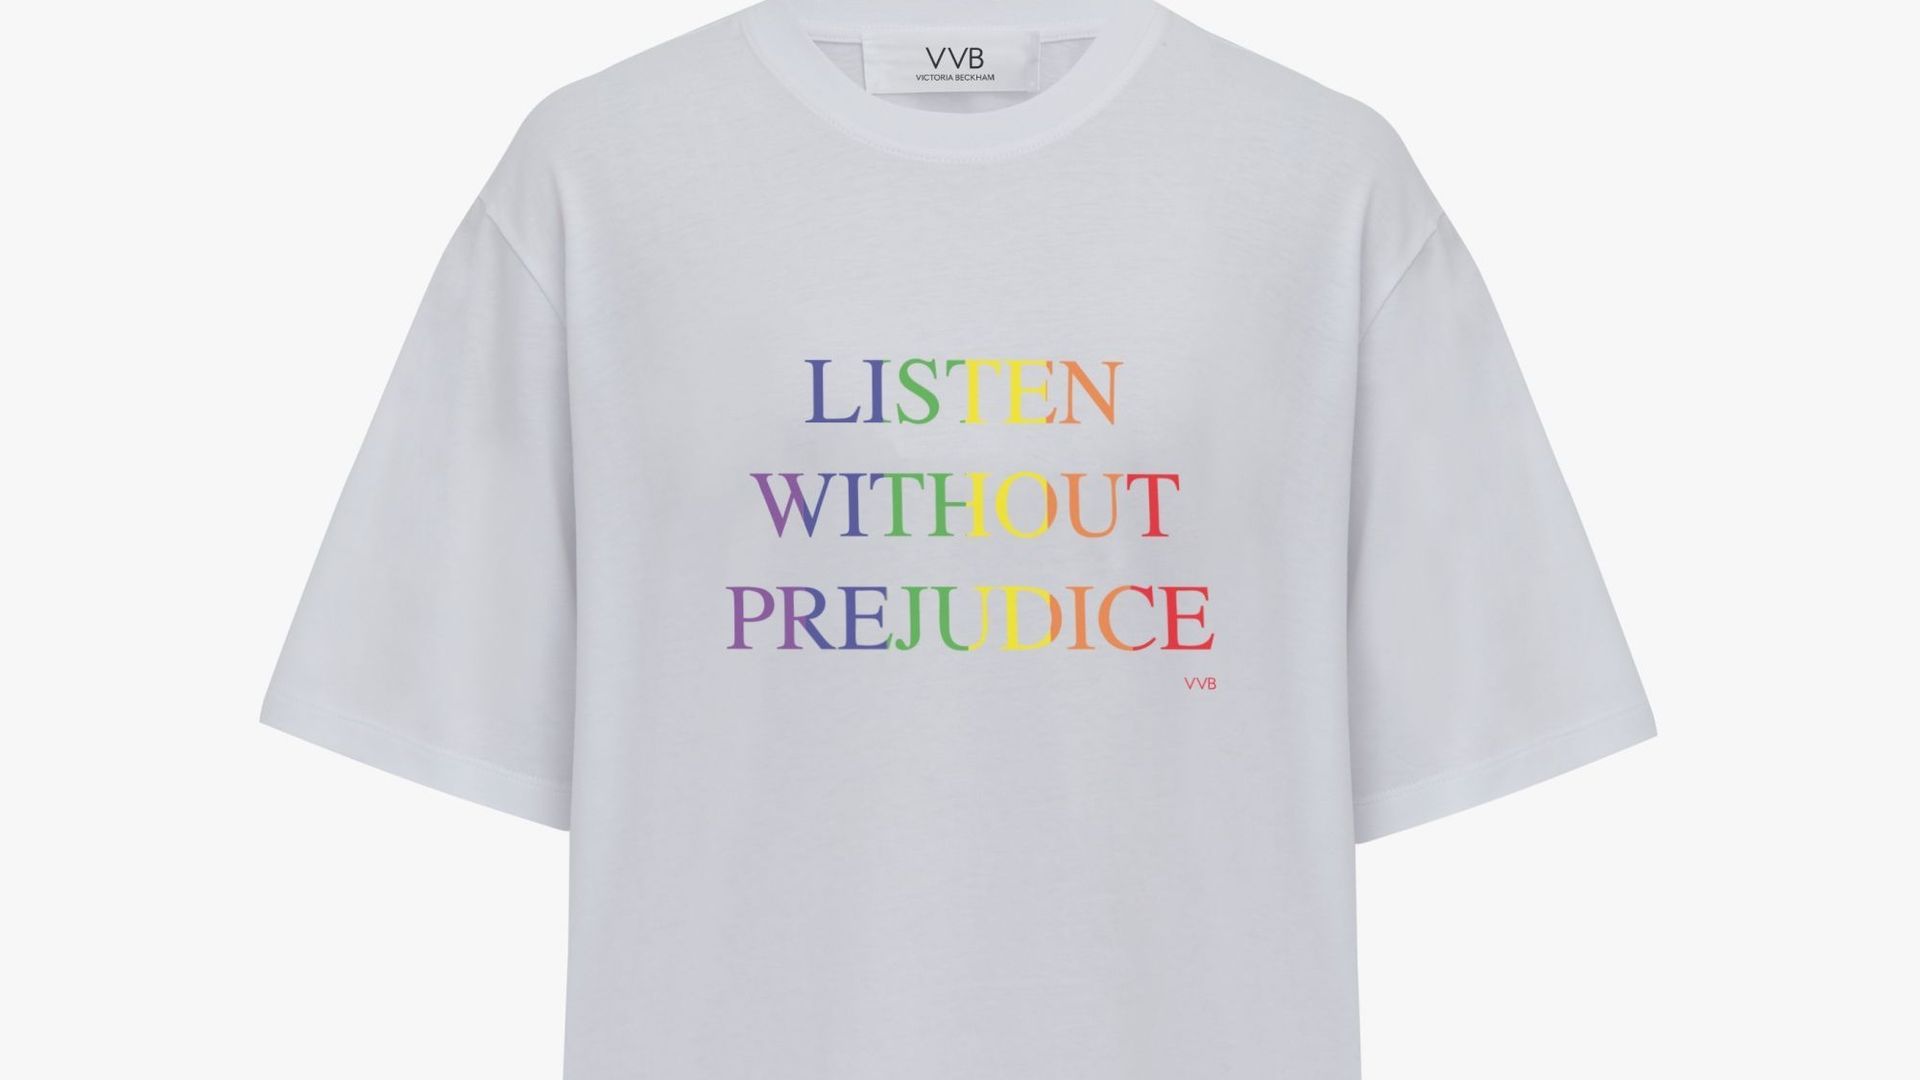 Le T-shirt proposé par Victoria Beckham pour le mois des fiertés.